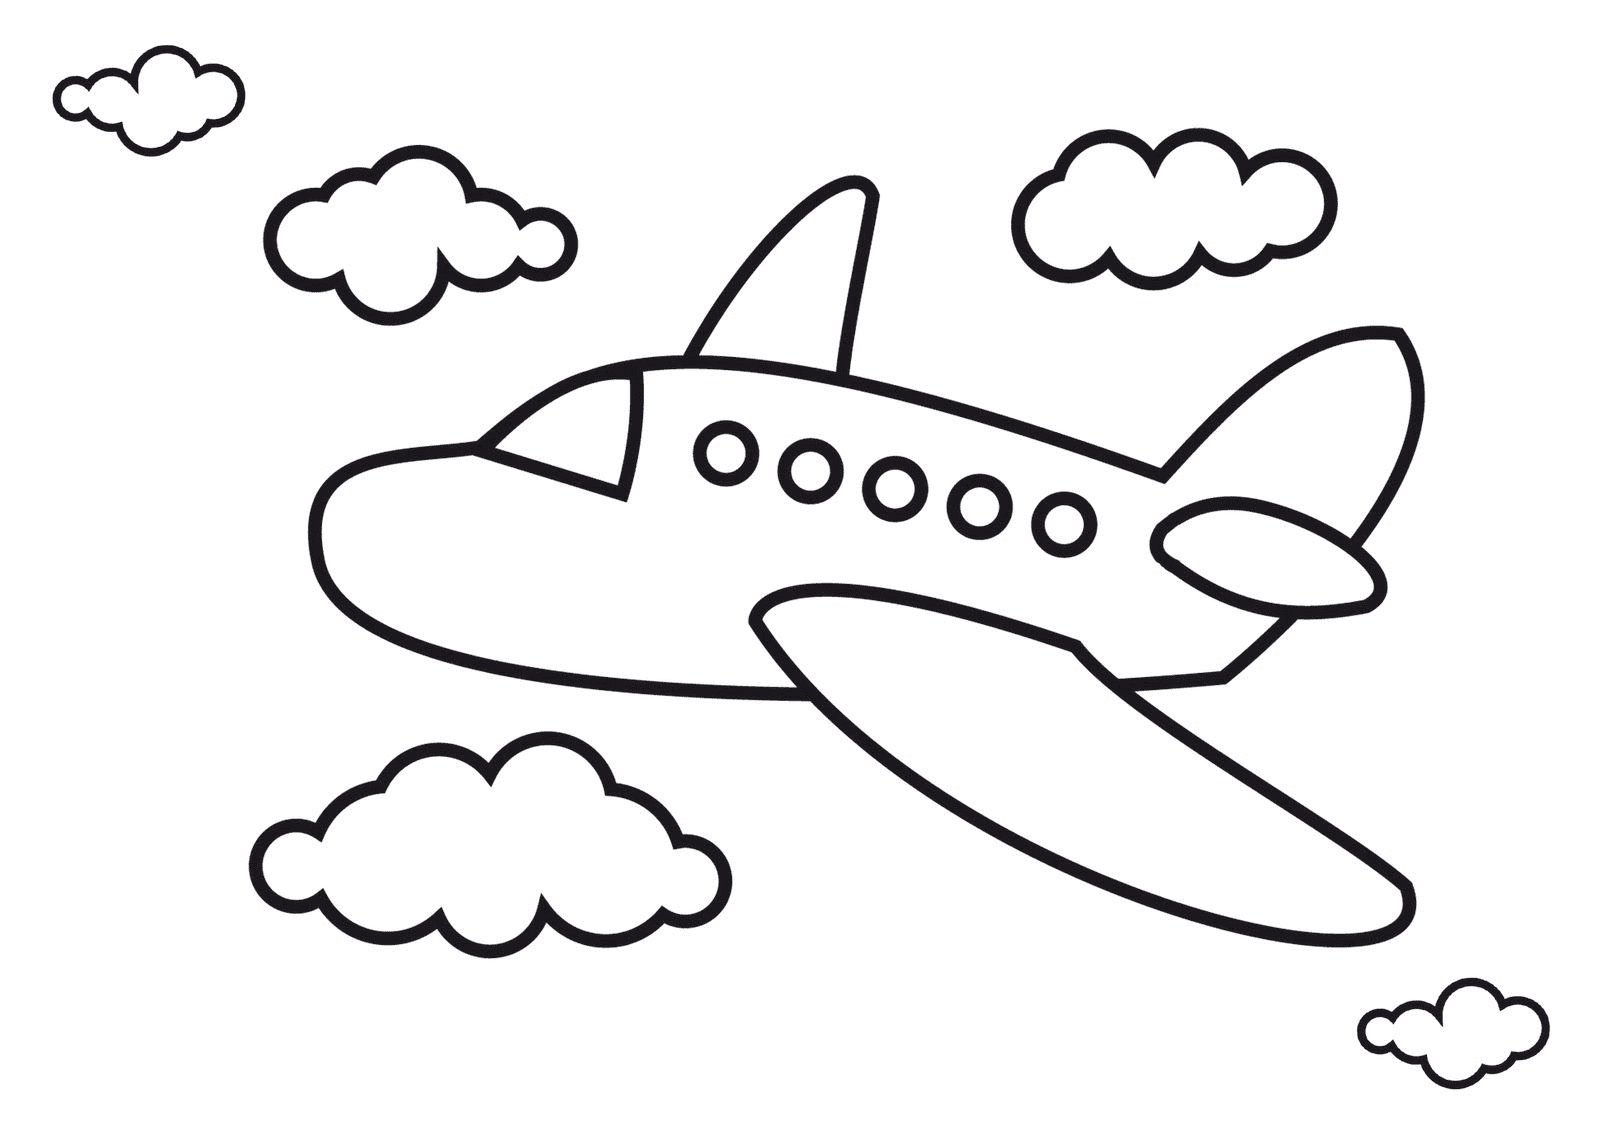 Immagini di aeroplani per bambini da Aereo